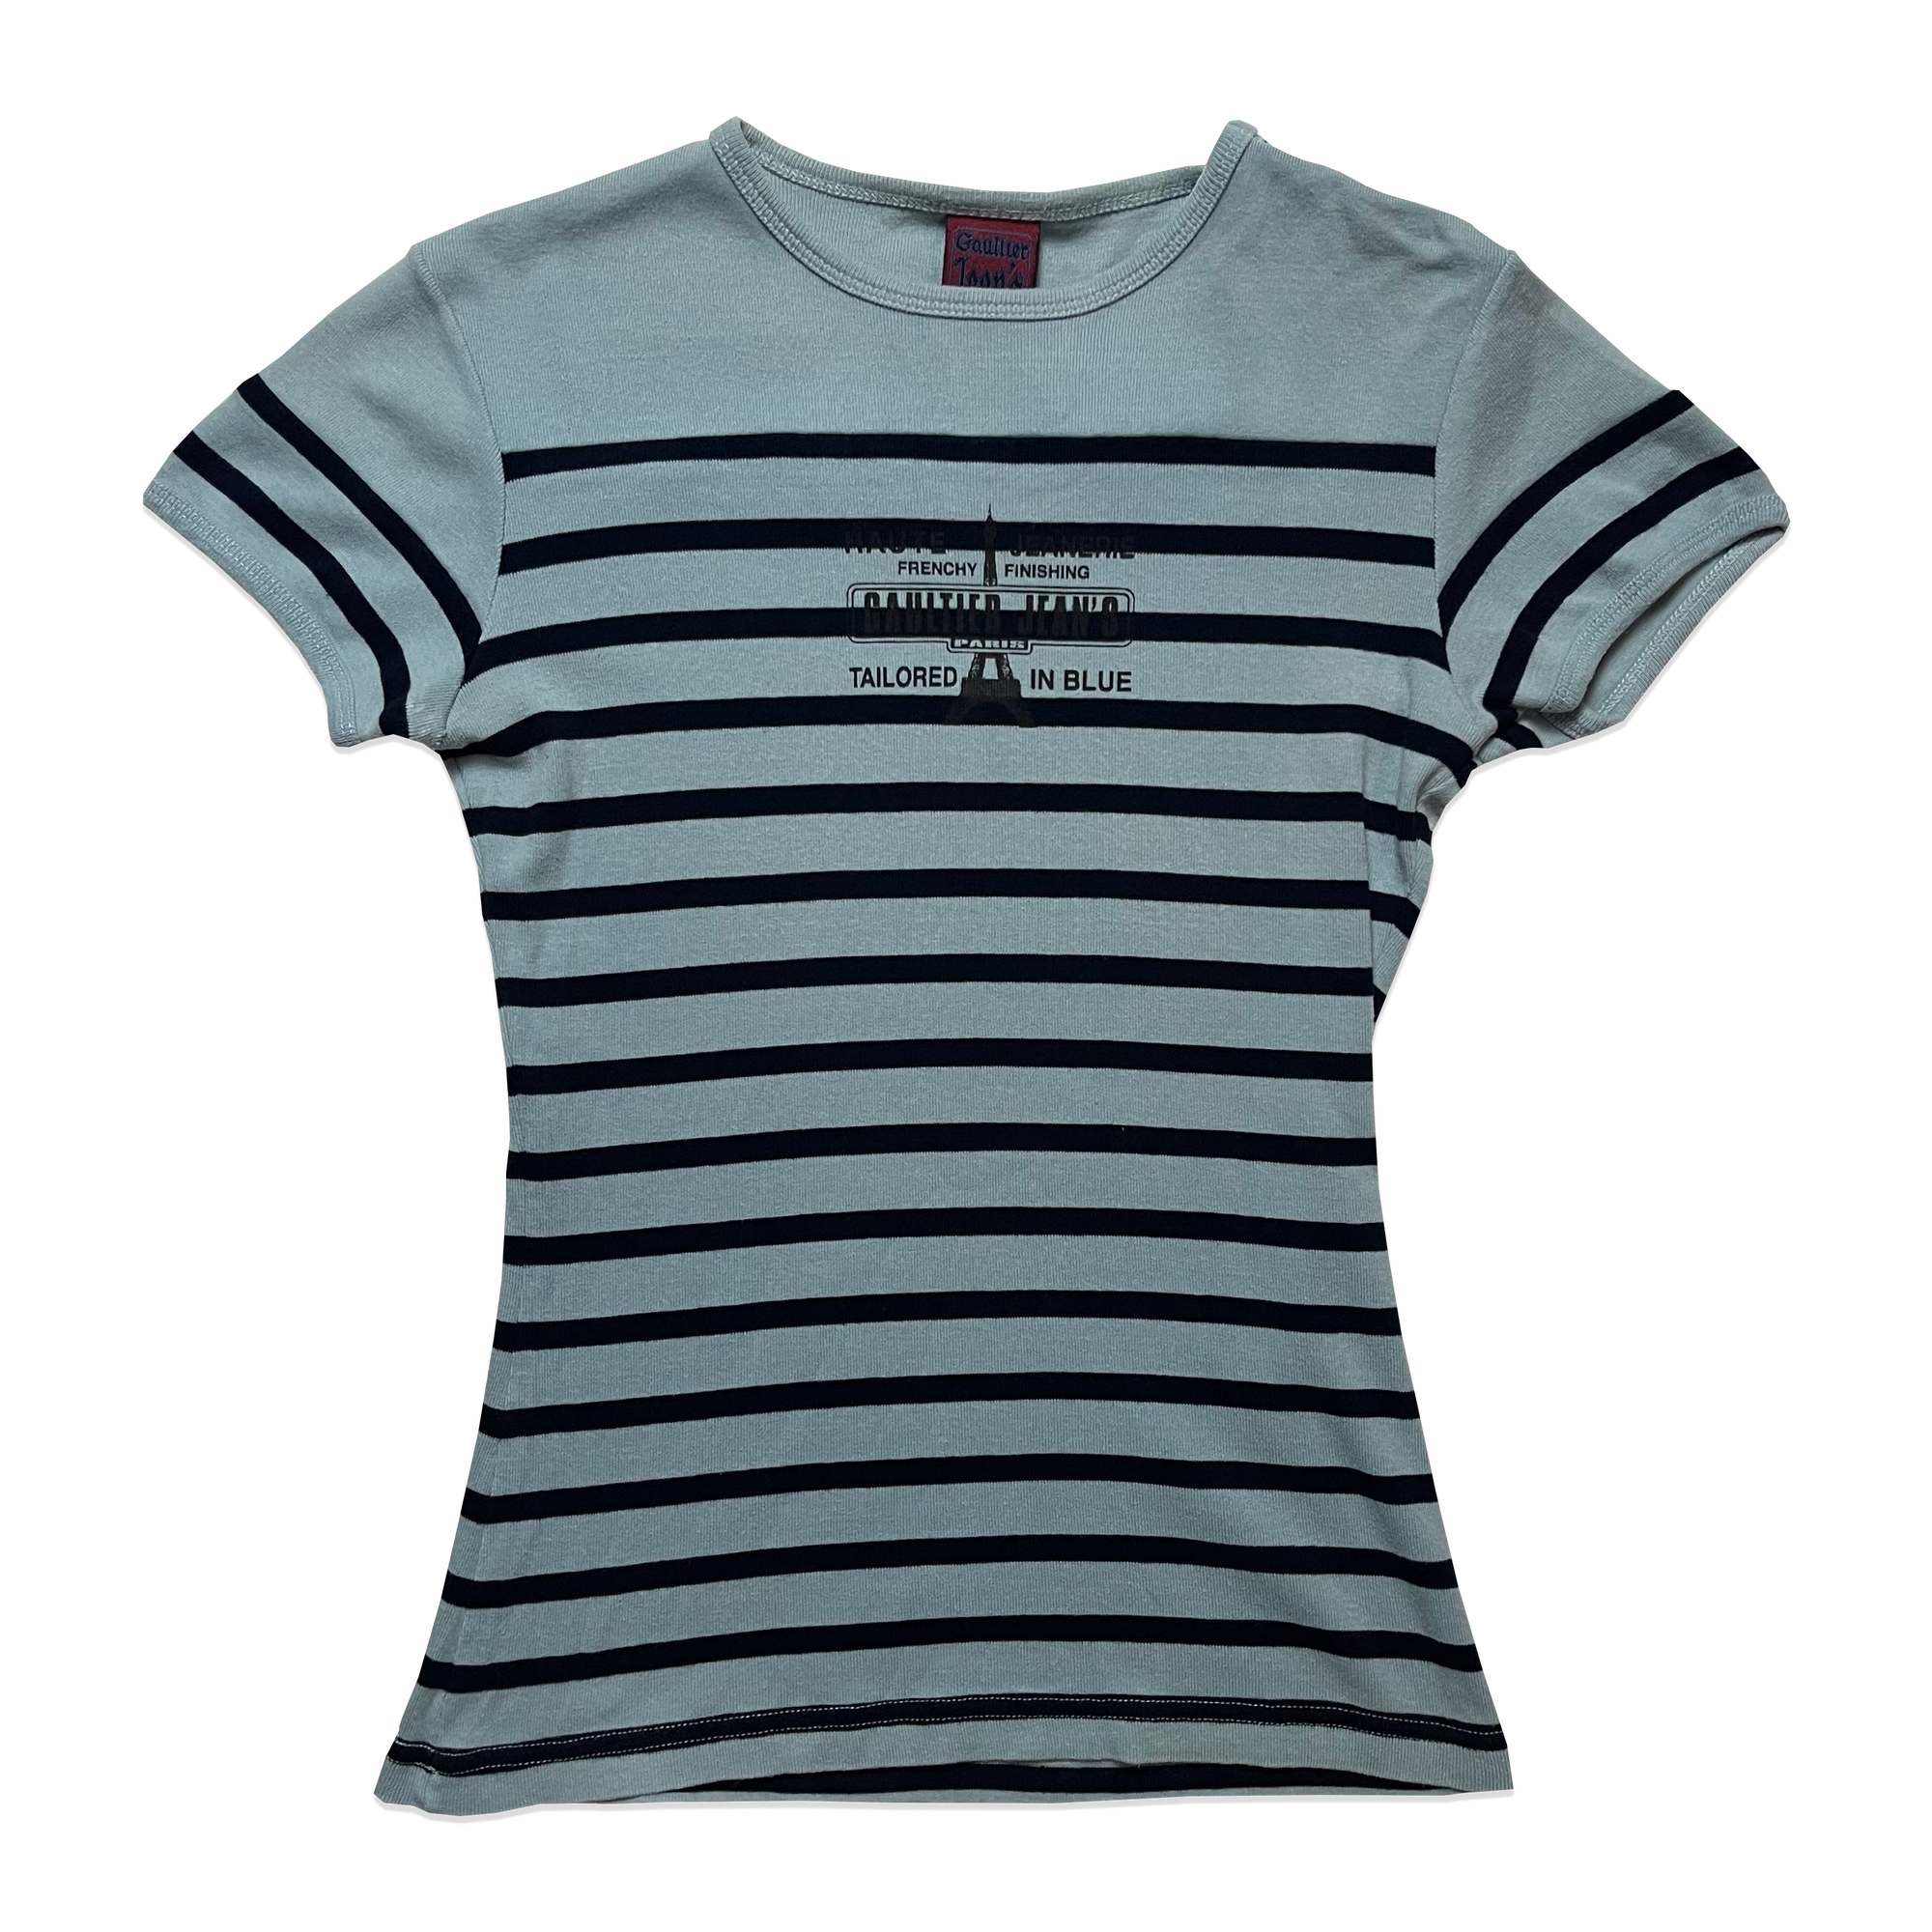 T-shirt - Jean Paul Gaultier - Bleu